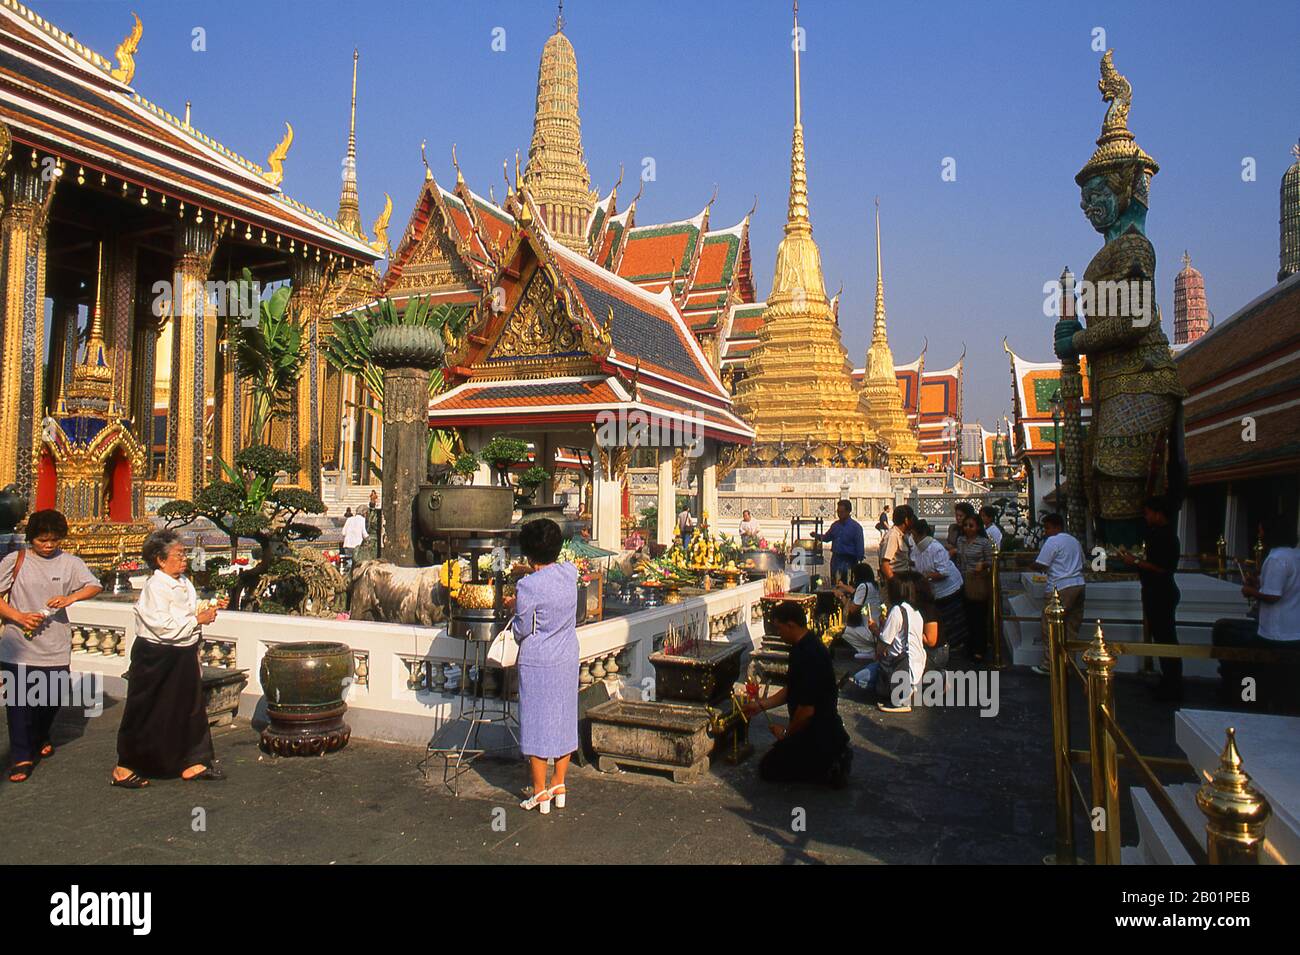 Thailandia: Persone che illuminano incenso al santuario Chao Mae Guan Im (Guanyin) di fronte all'ubosot, Wat Phra Kaew, Bangkok. Wat Phra Kaew (Tempio del Buddha di Smeraldo), nome ufficiale completo Wat Phra si Rattana Satsadaram, è considerato il tempio buddista più sacro della Thailandia. Si trova all'interno dei quartieri del Grand Palace. Il Grand Palace servì come residenza ufficiale dei re di Thailandia dal XVIII secolo in poi. La costruzione del palazzo iniziò nel 1782, durante il regno di re Rama i, quando spostò la capitale attraverso il fiume. Foto Stock